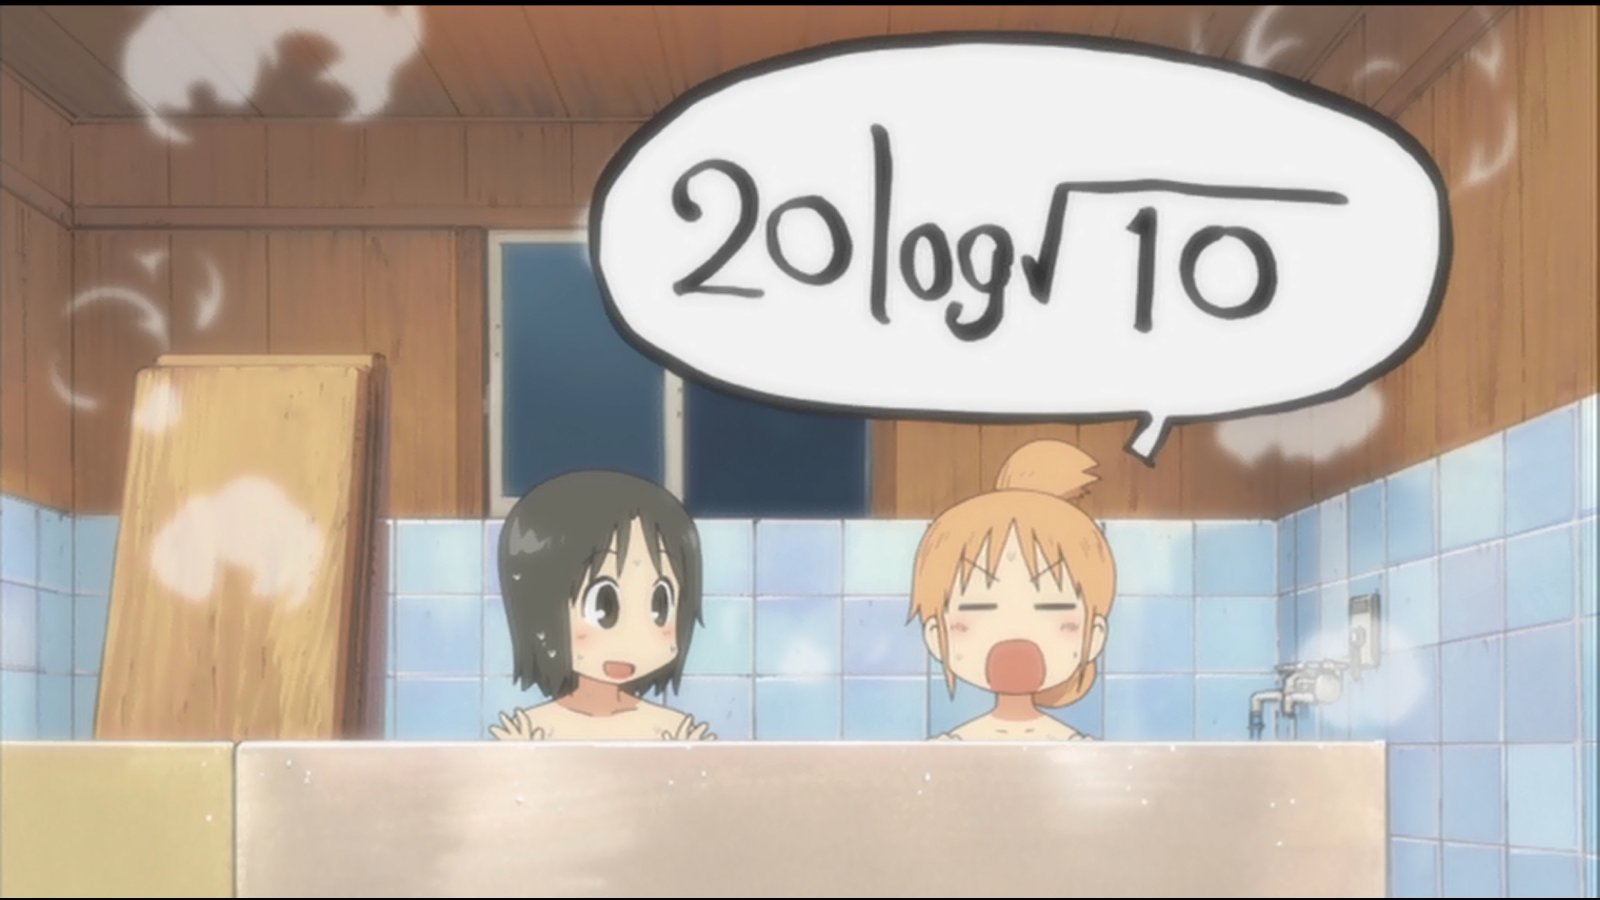 Bechiko 久々に見たアニメ 日常 で 風呂で10数えるようなのに言われ はかせが一言答えたこのシーンが今しばらくツボ 自然対数ではなく常用対数なんだな 日常 log 10 数学好きはめんどくさい